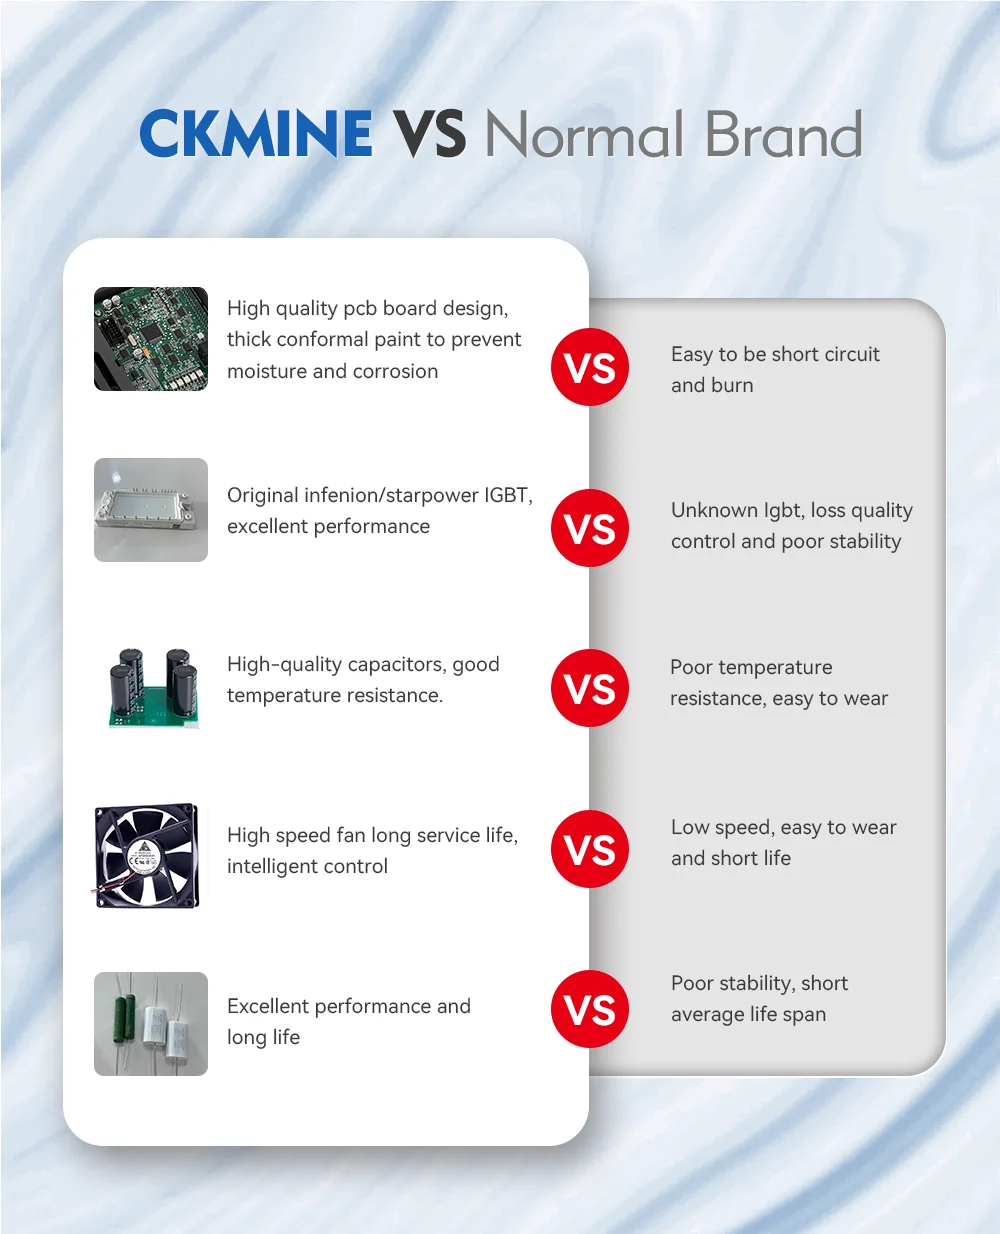 CKMINE 엘리베이터 부품 개방형 루프 주파수 인버터 모터 드라이브 오프 그리드 Ac 380V 삼상 11kW 15HP VFD 속도 제어 세부사항